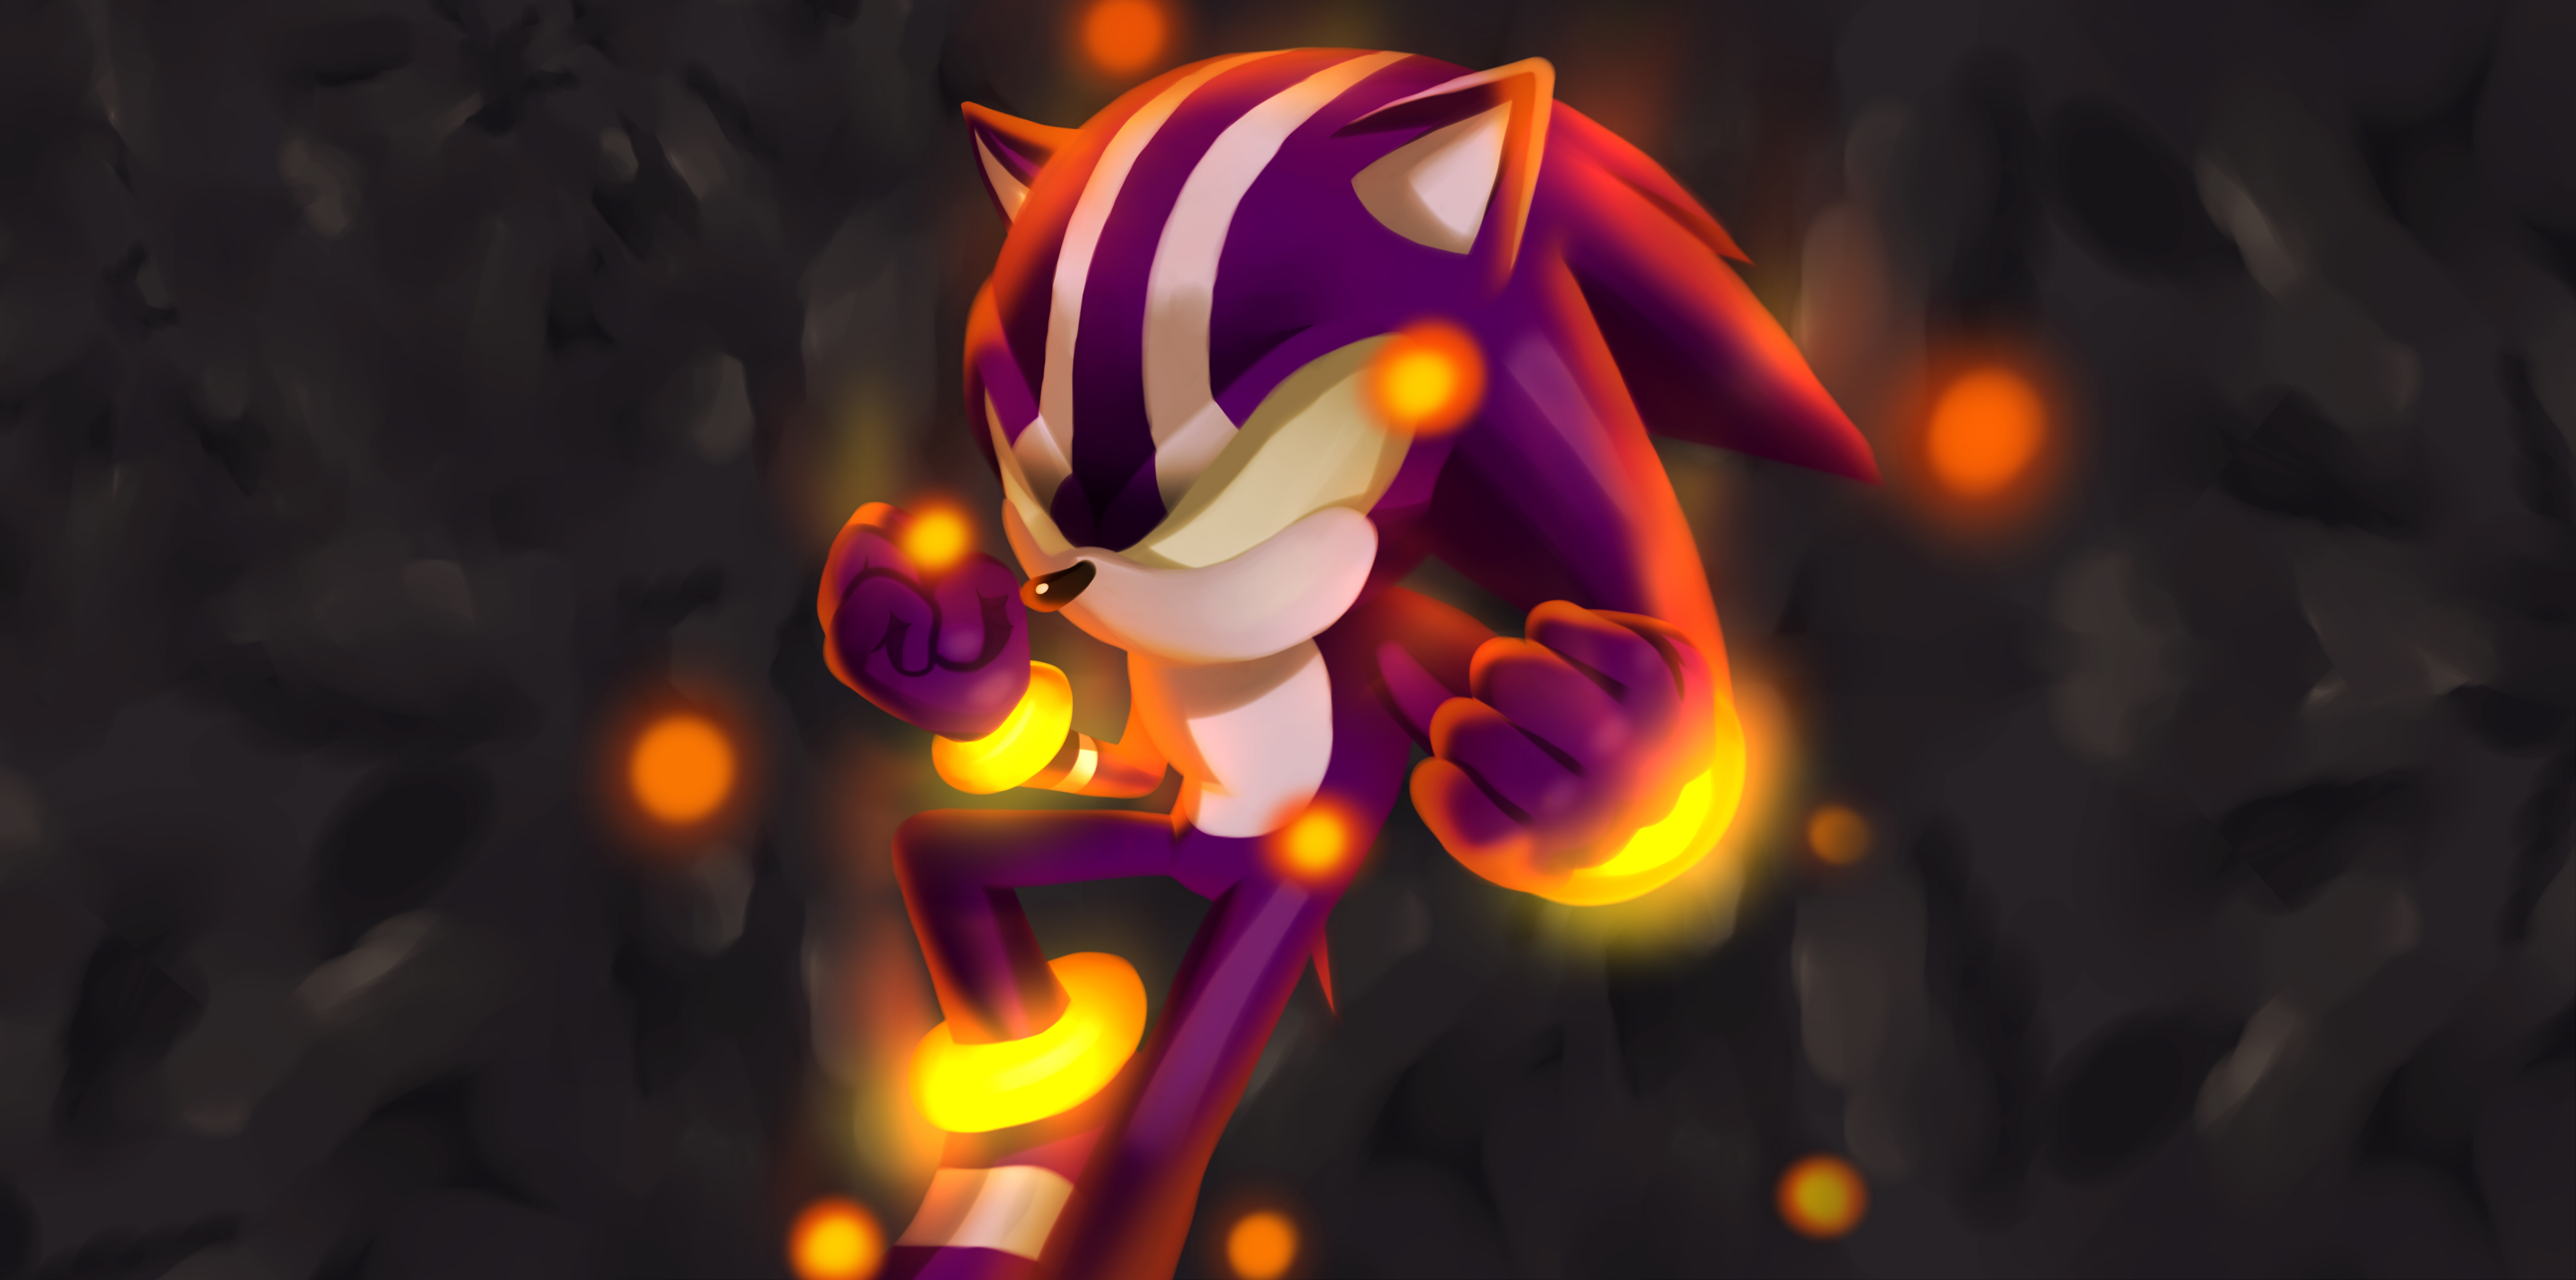 Darkspine Sonic V2.1 by Natakiro on DeviantArt